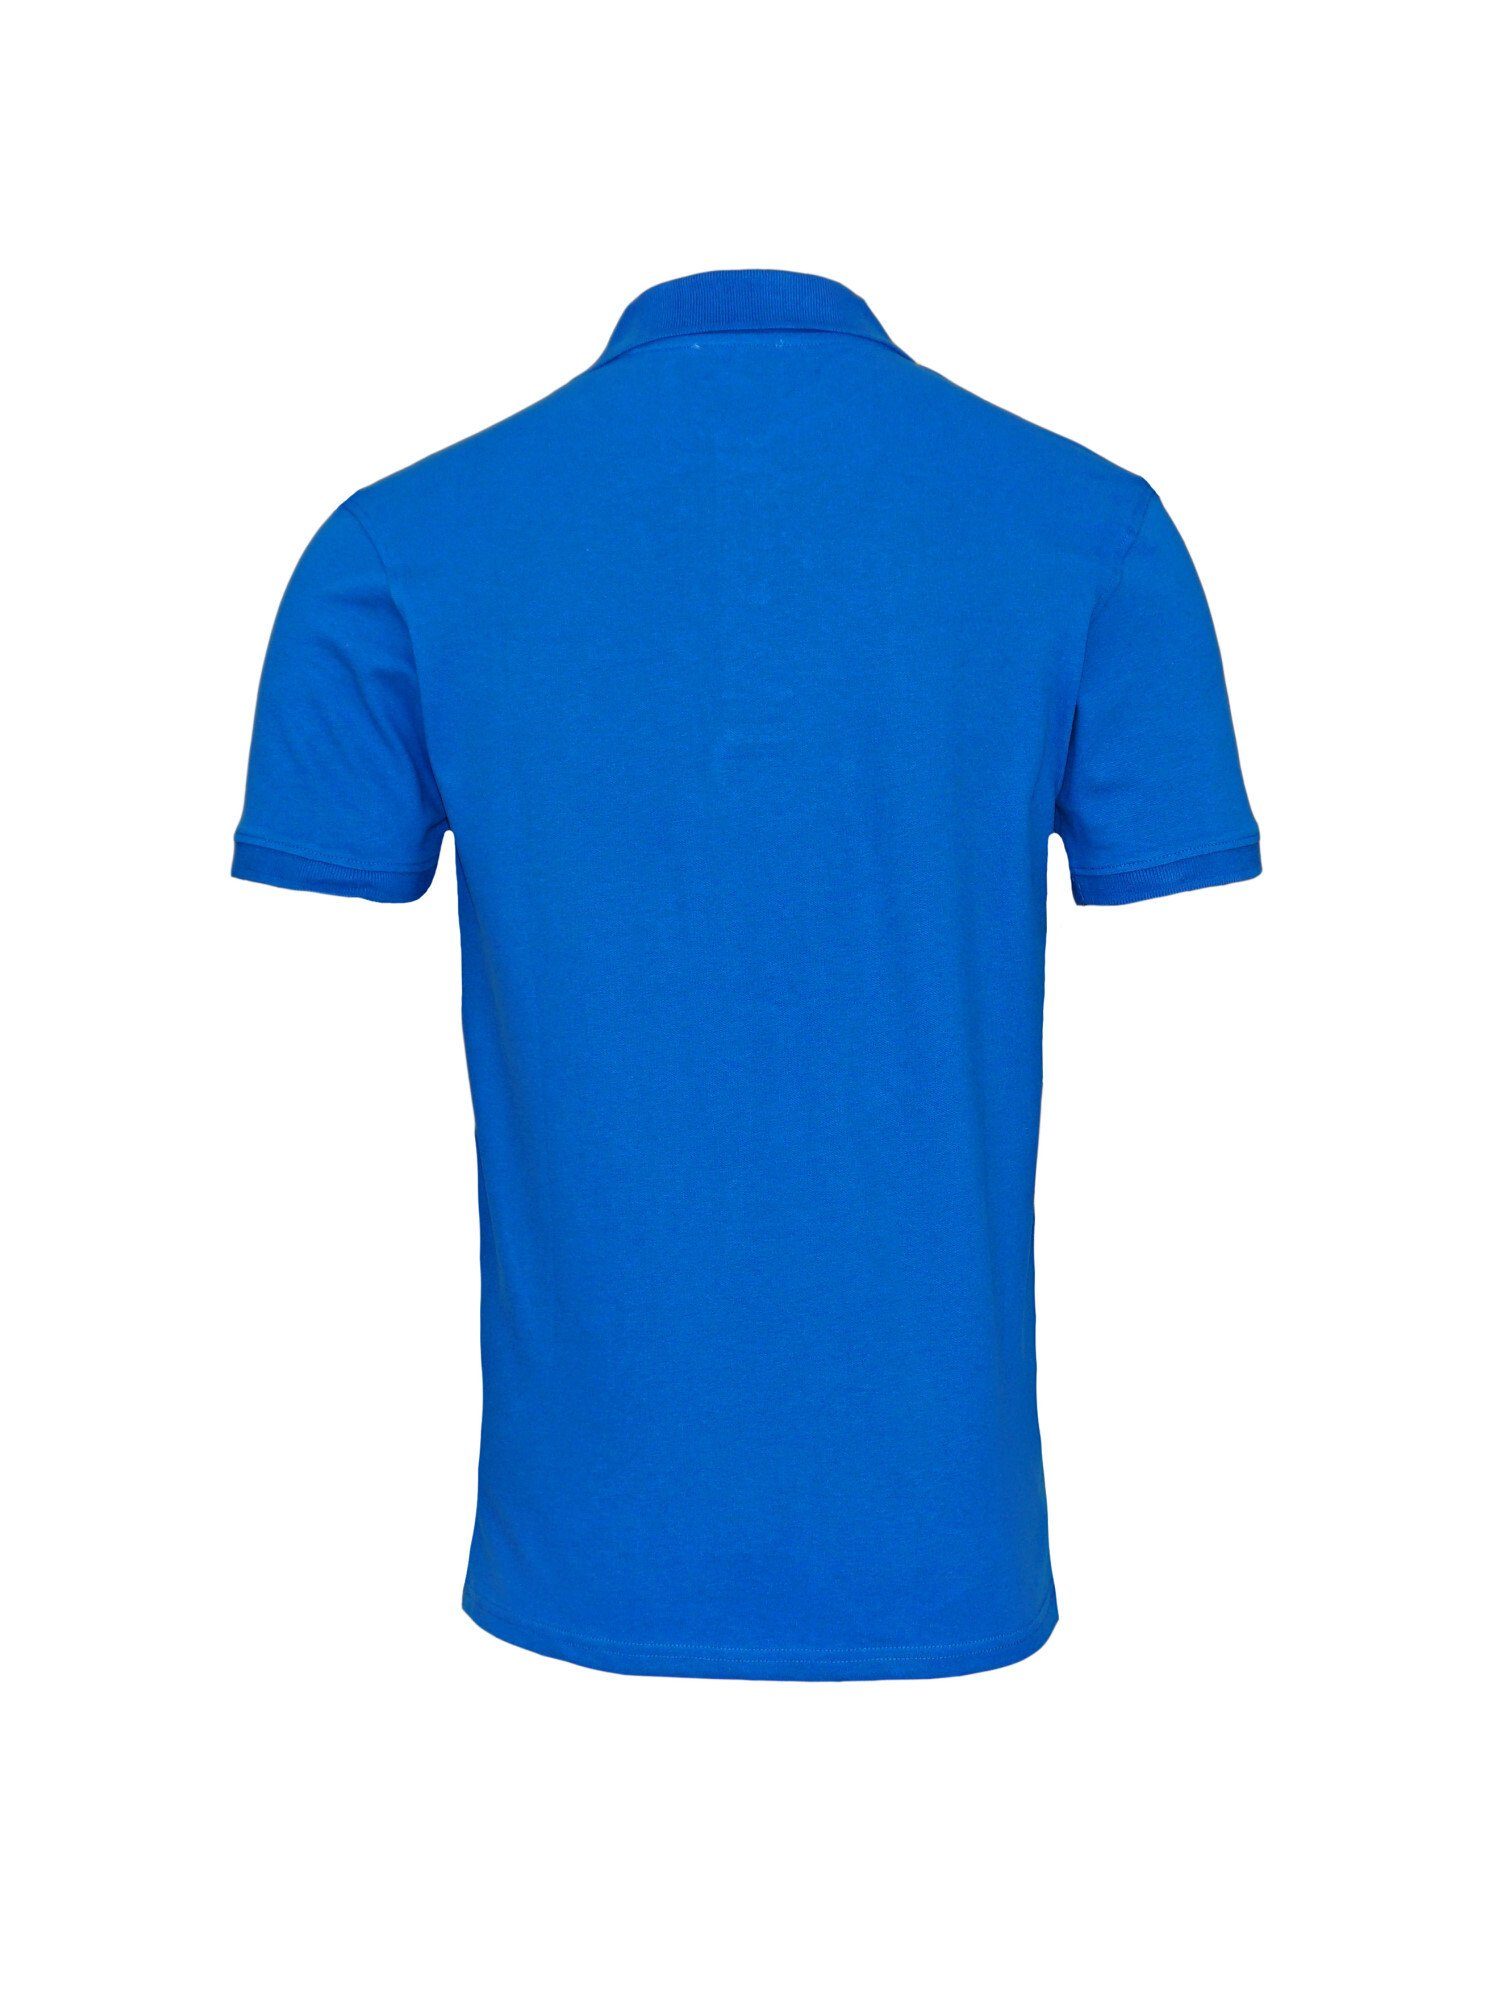 U.S. Polo Assn Poloshirt Shirt blau Shortsleeve Poloshirt Basic (1-tlg) Polo